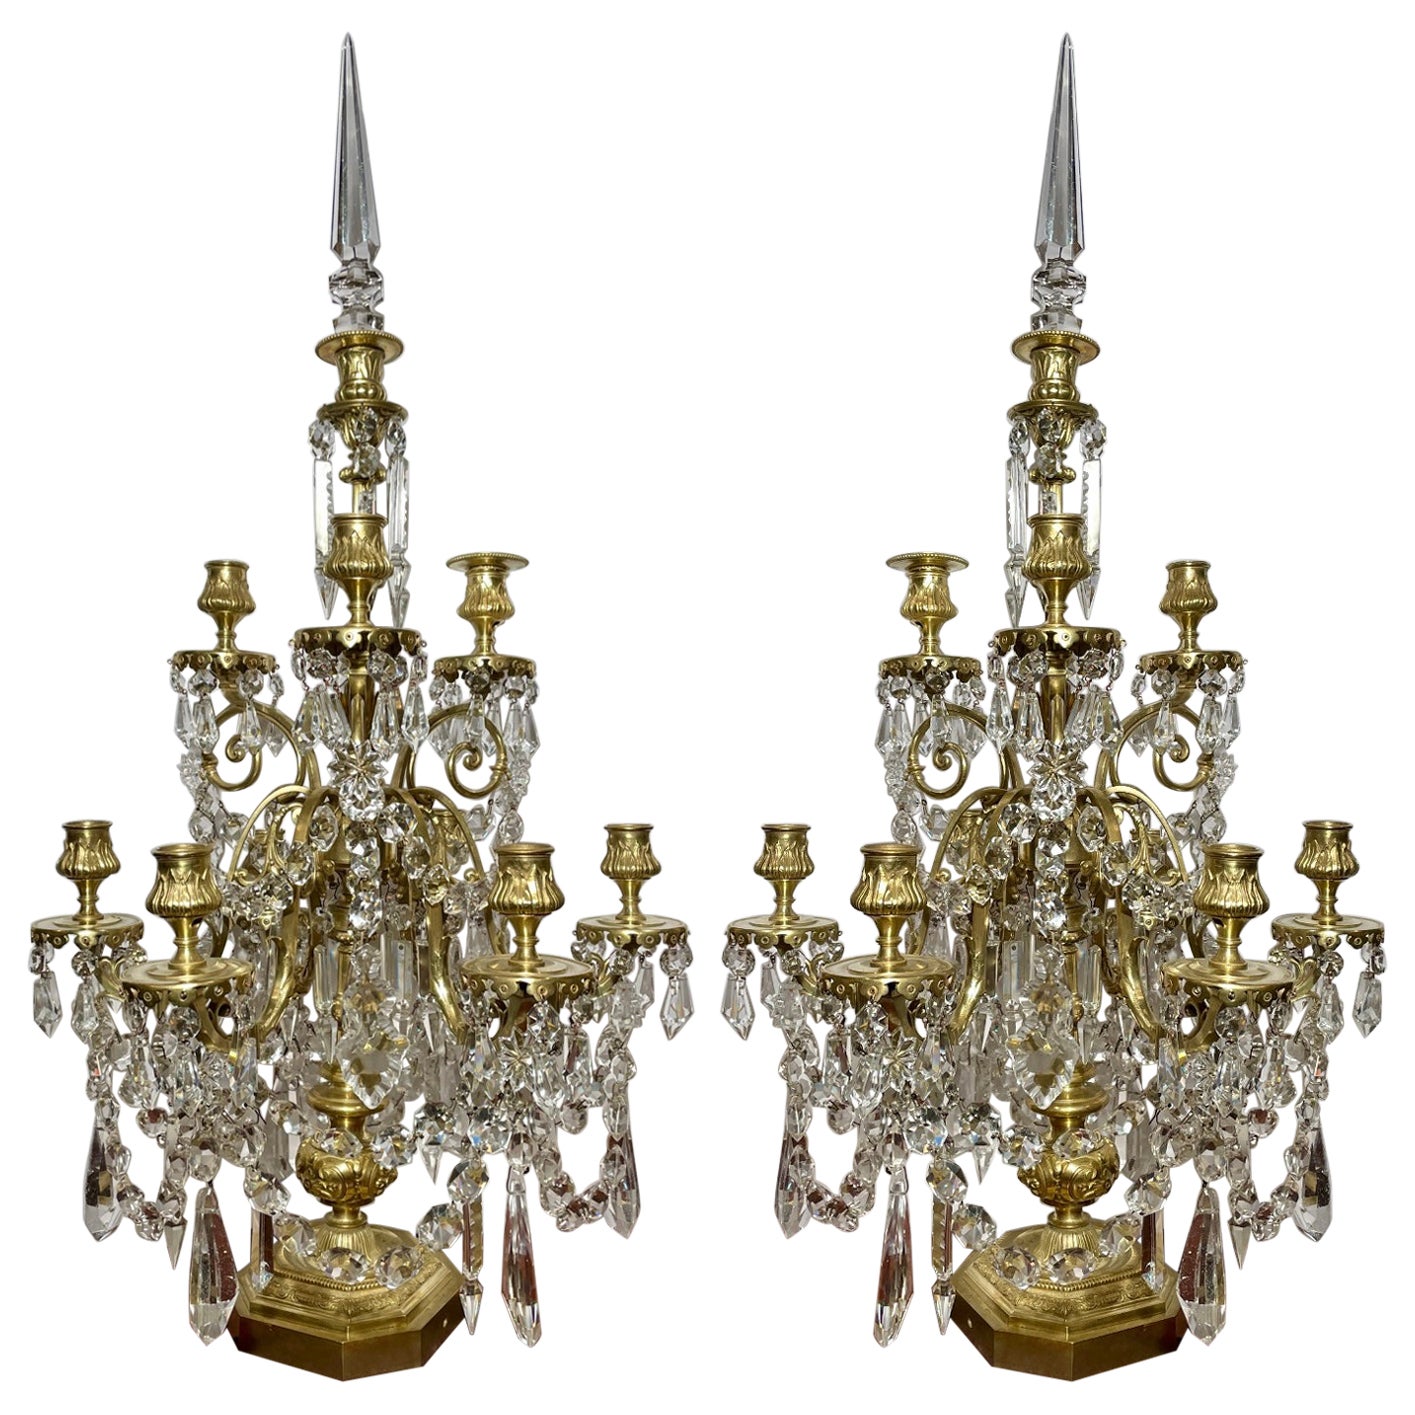 Paire de candélabres Girandoles françaises anciennes en or, bronze et cristal de Baccarat, vers 1880